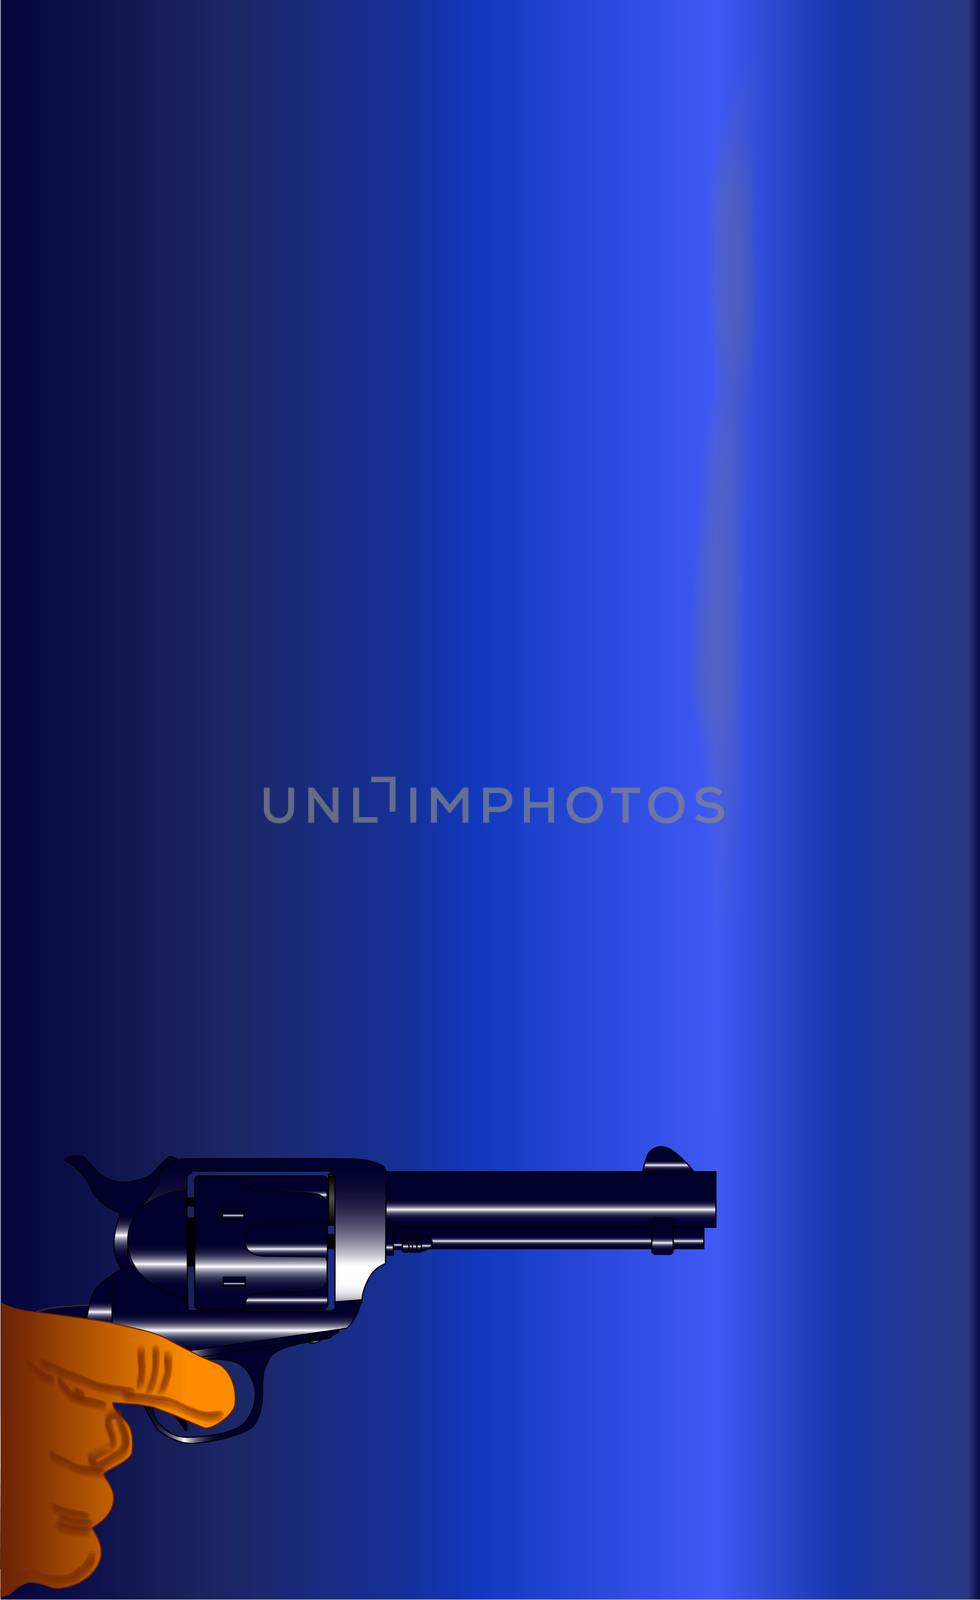 A smoking gun set on a dark blue background